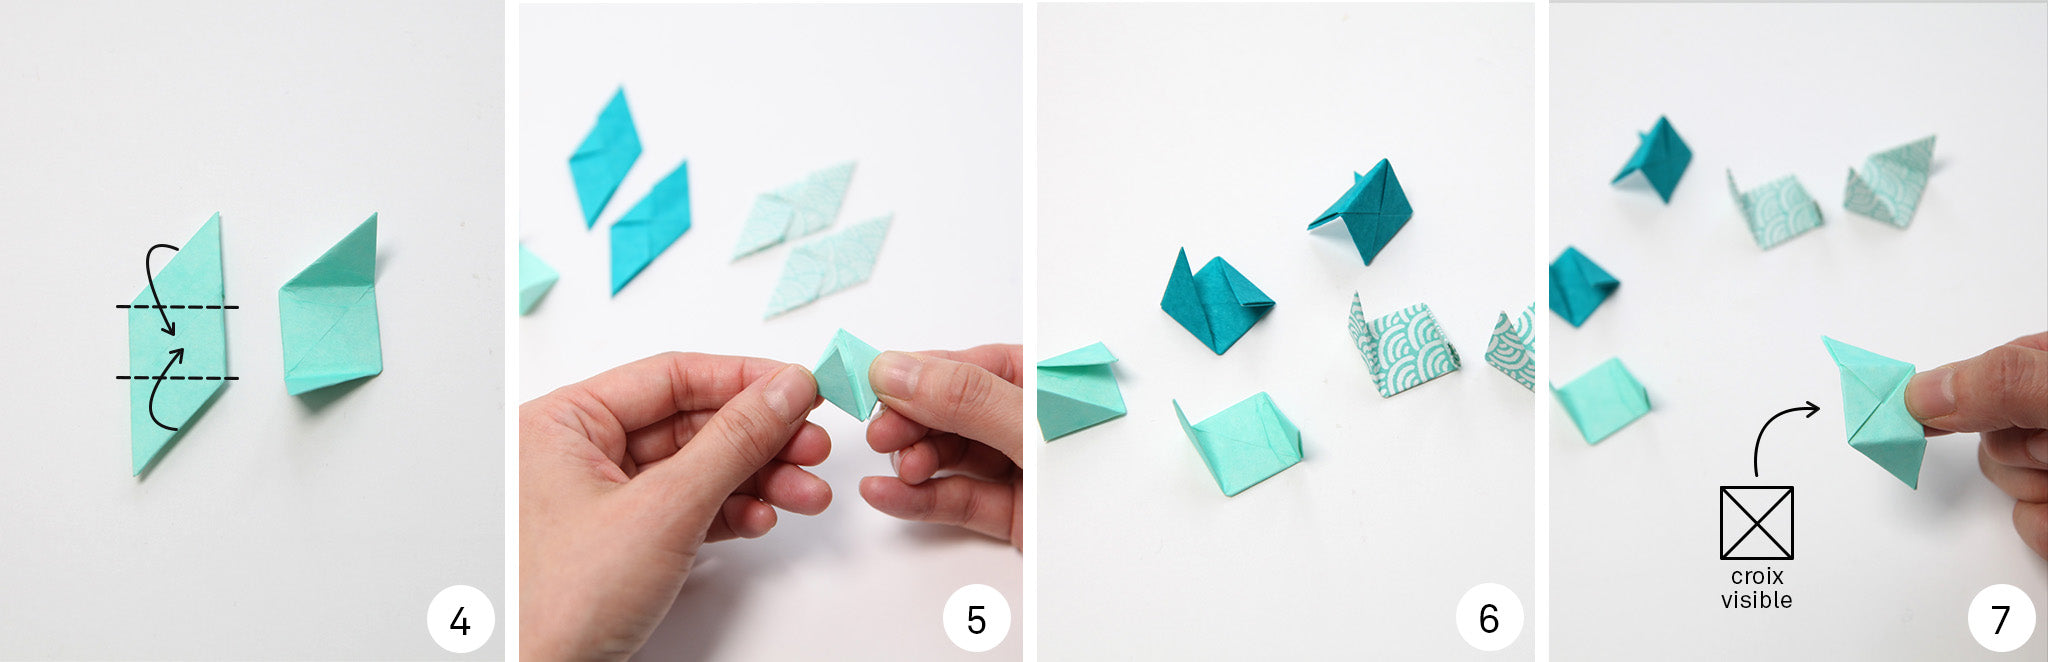 article-tuto-cube-origami-suspendre-montage-elements-etape-4-7